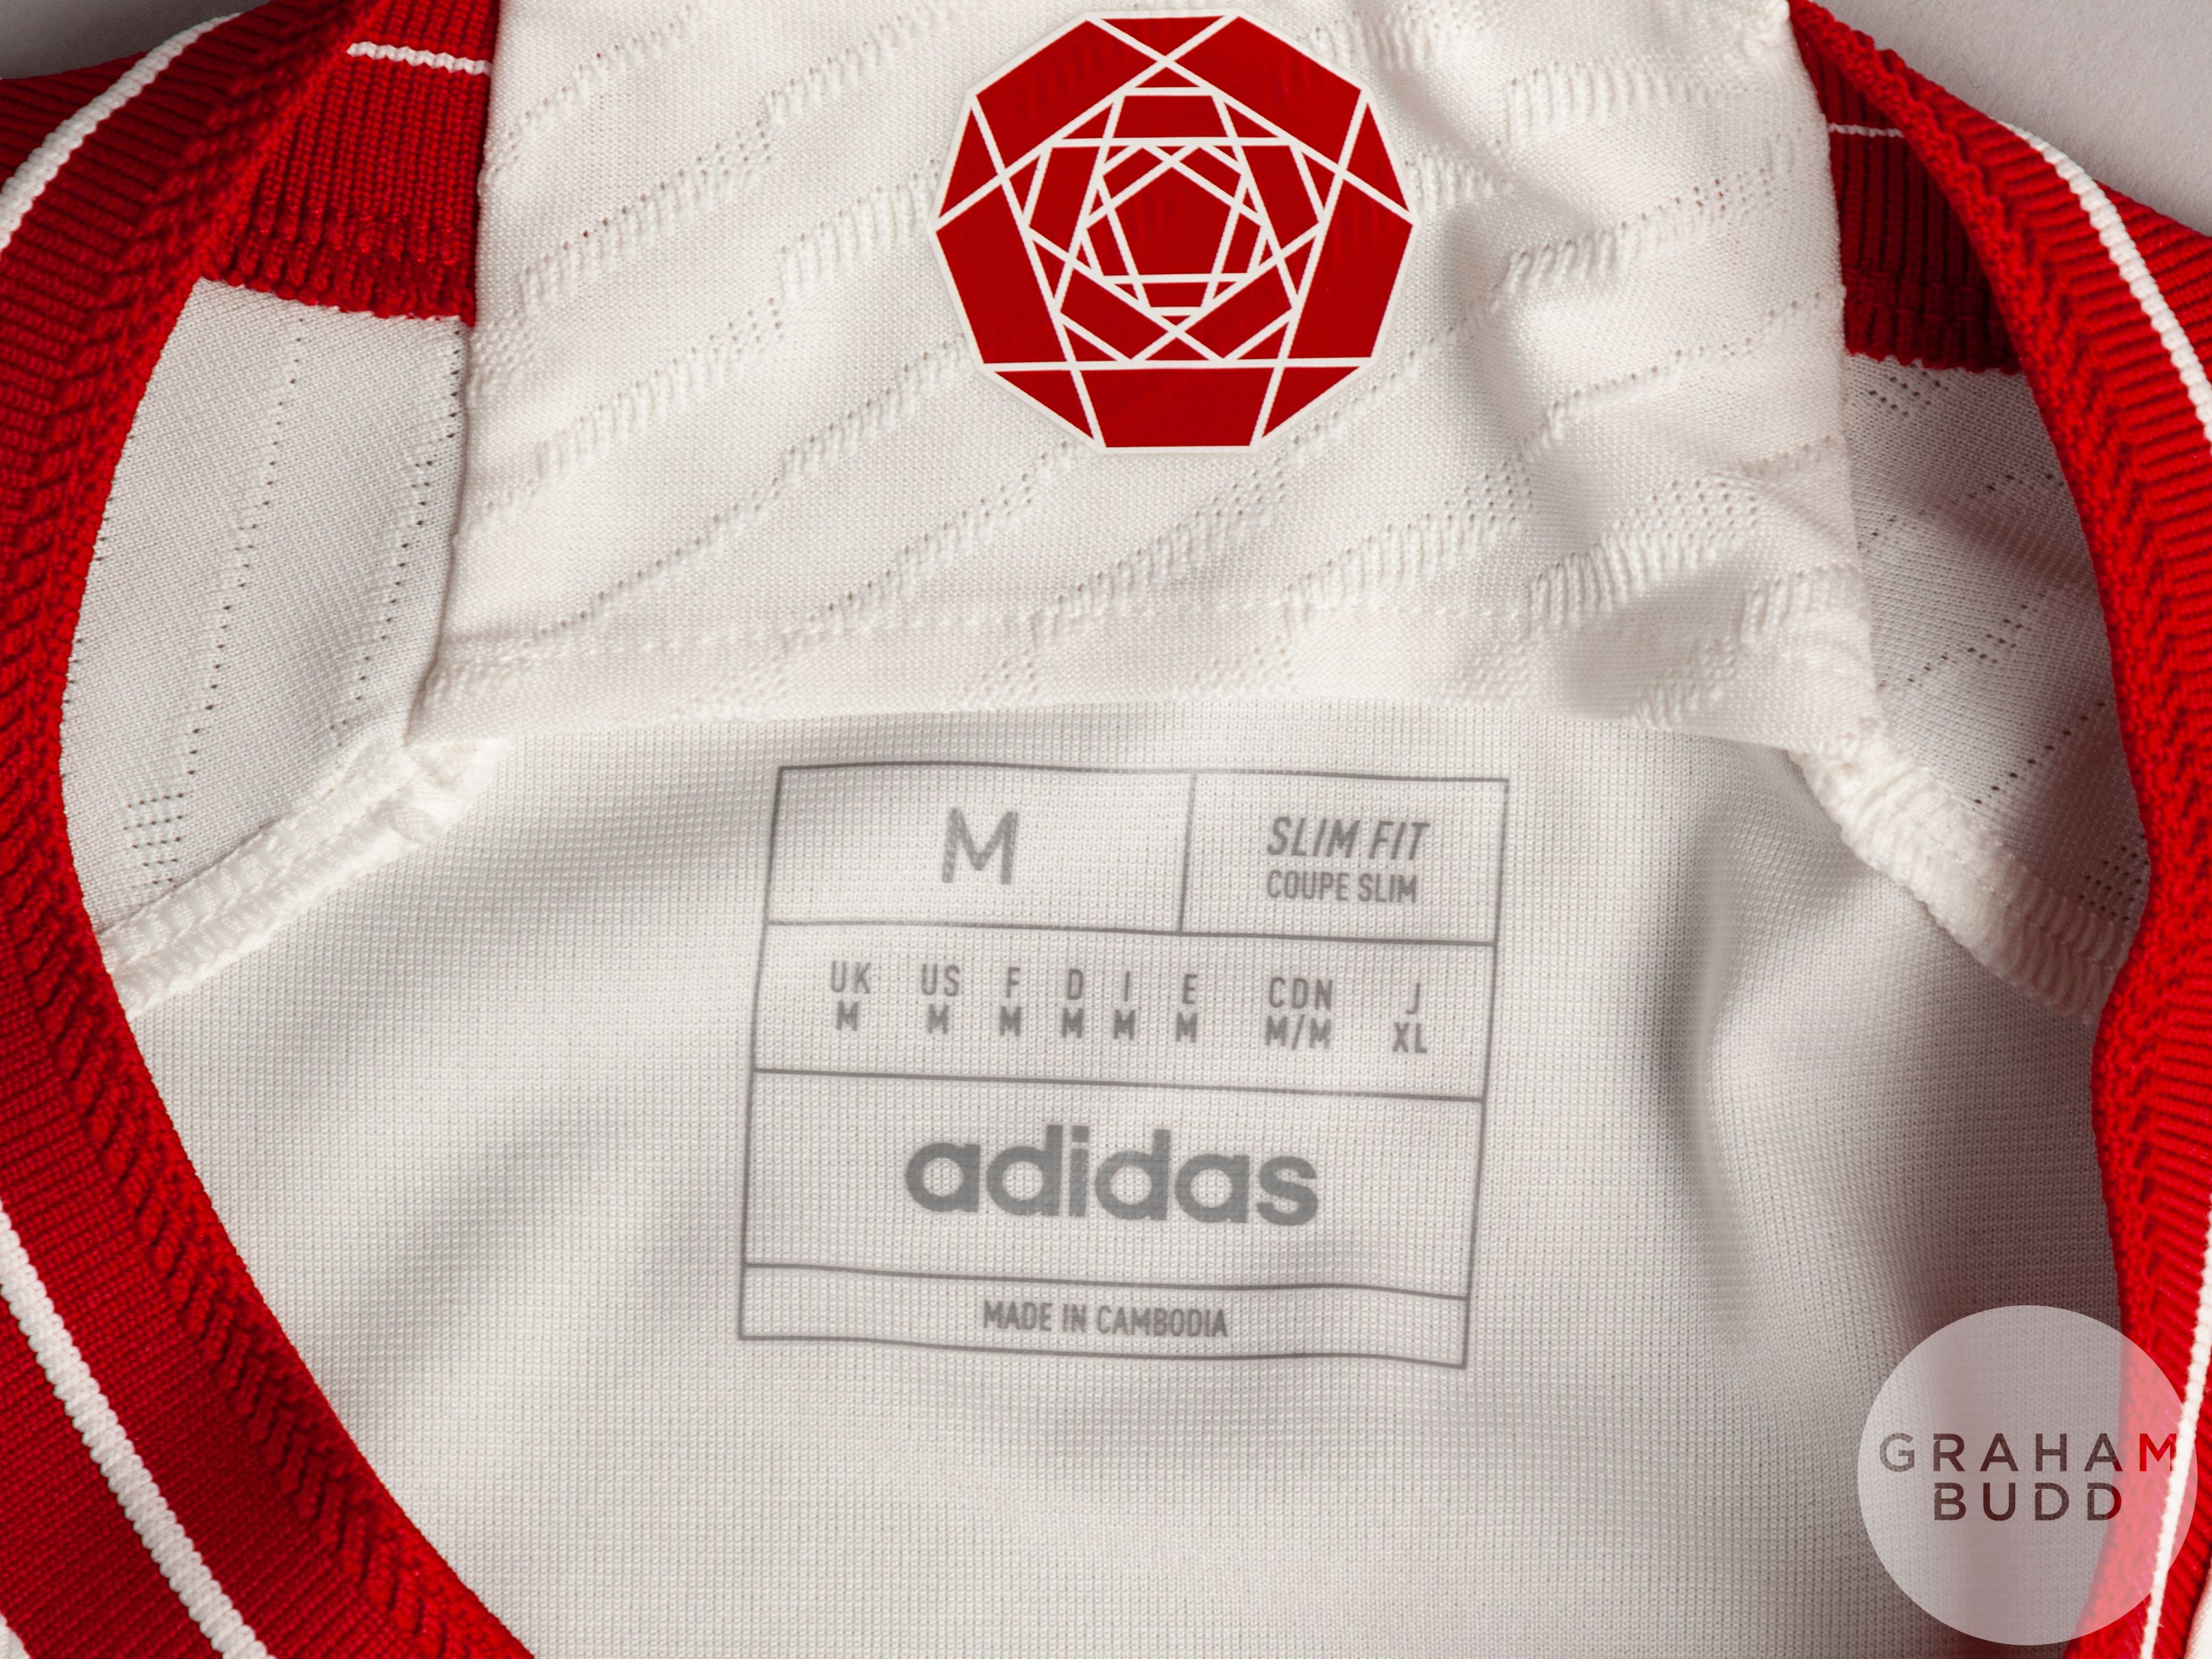 Kobbie Mainoo white Manchester United No.37 third choice shirt, season 2023-34, - Image 5 of 6